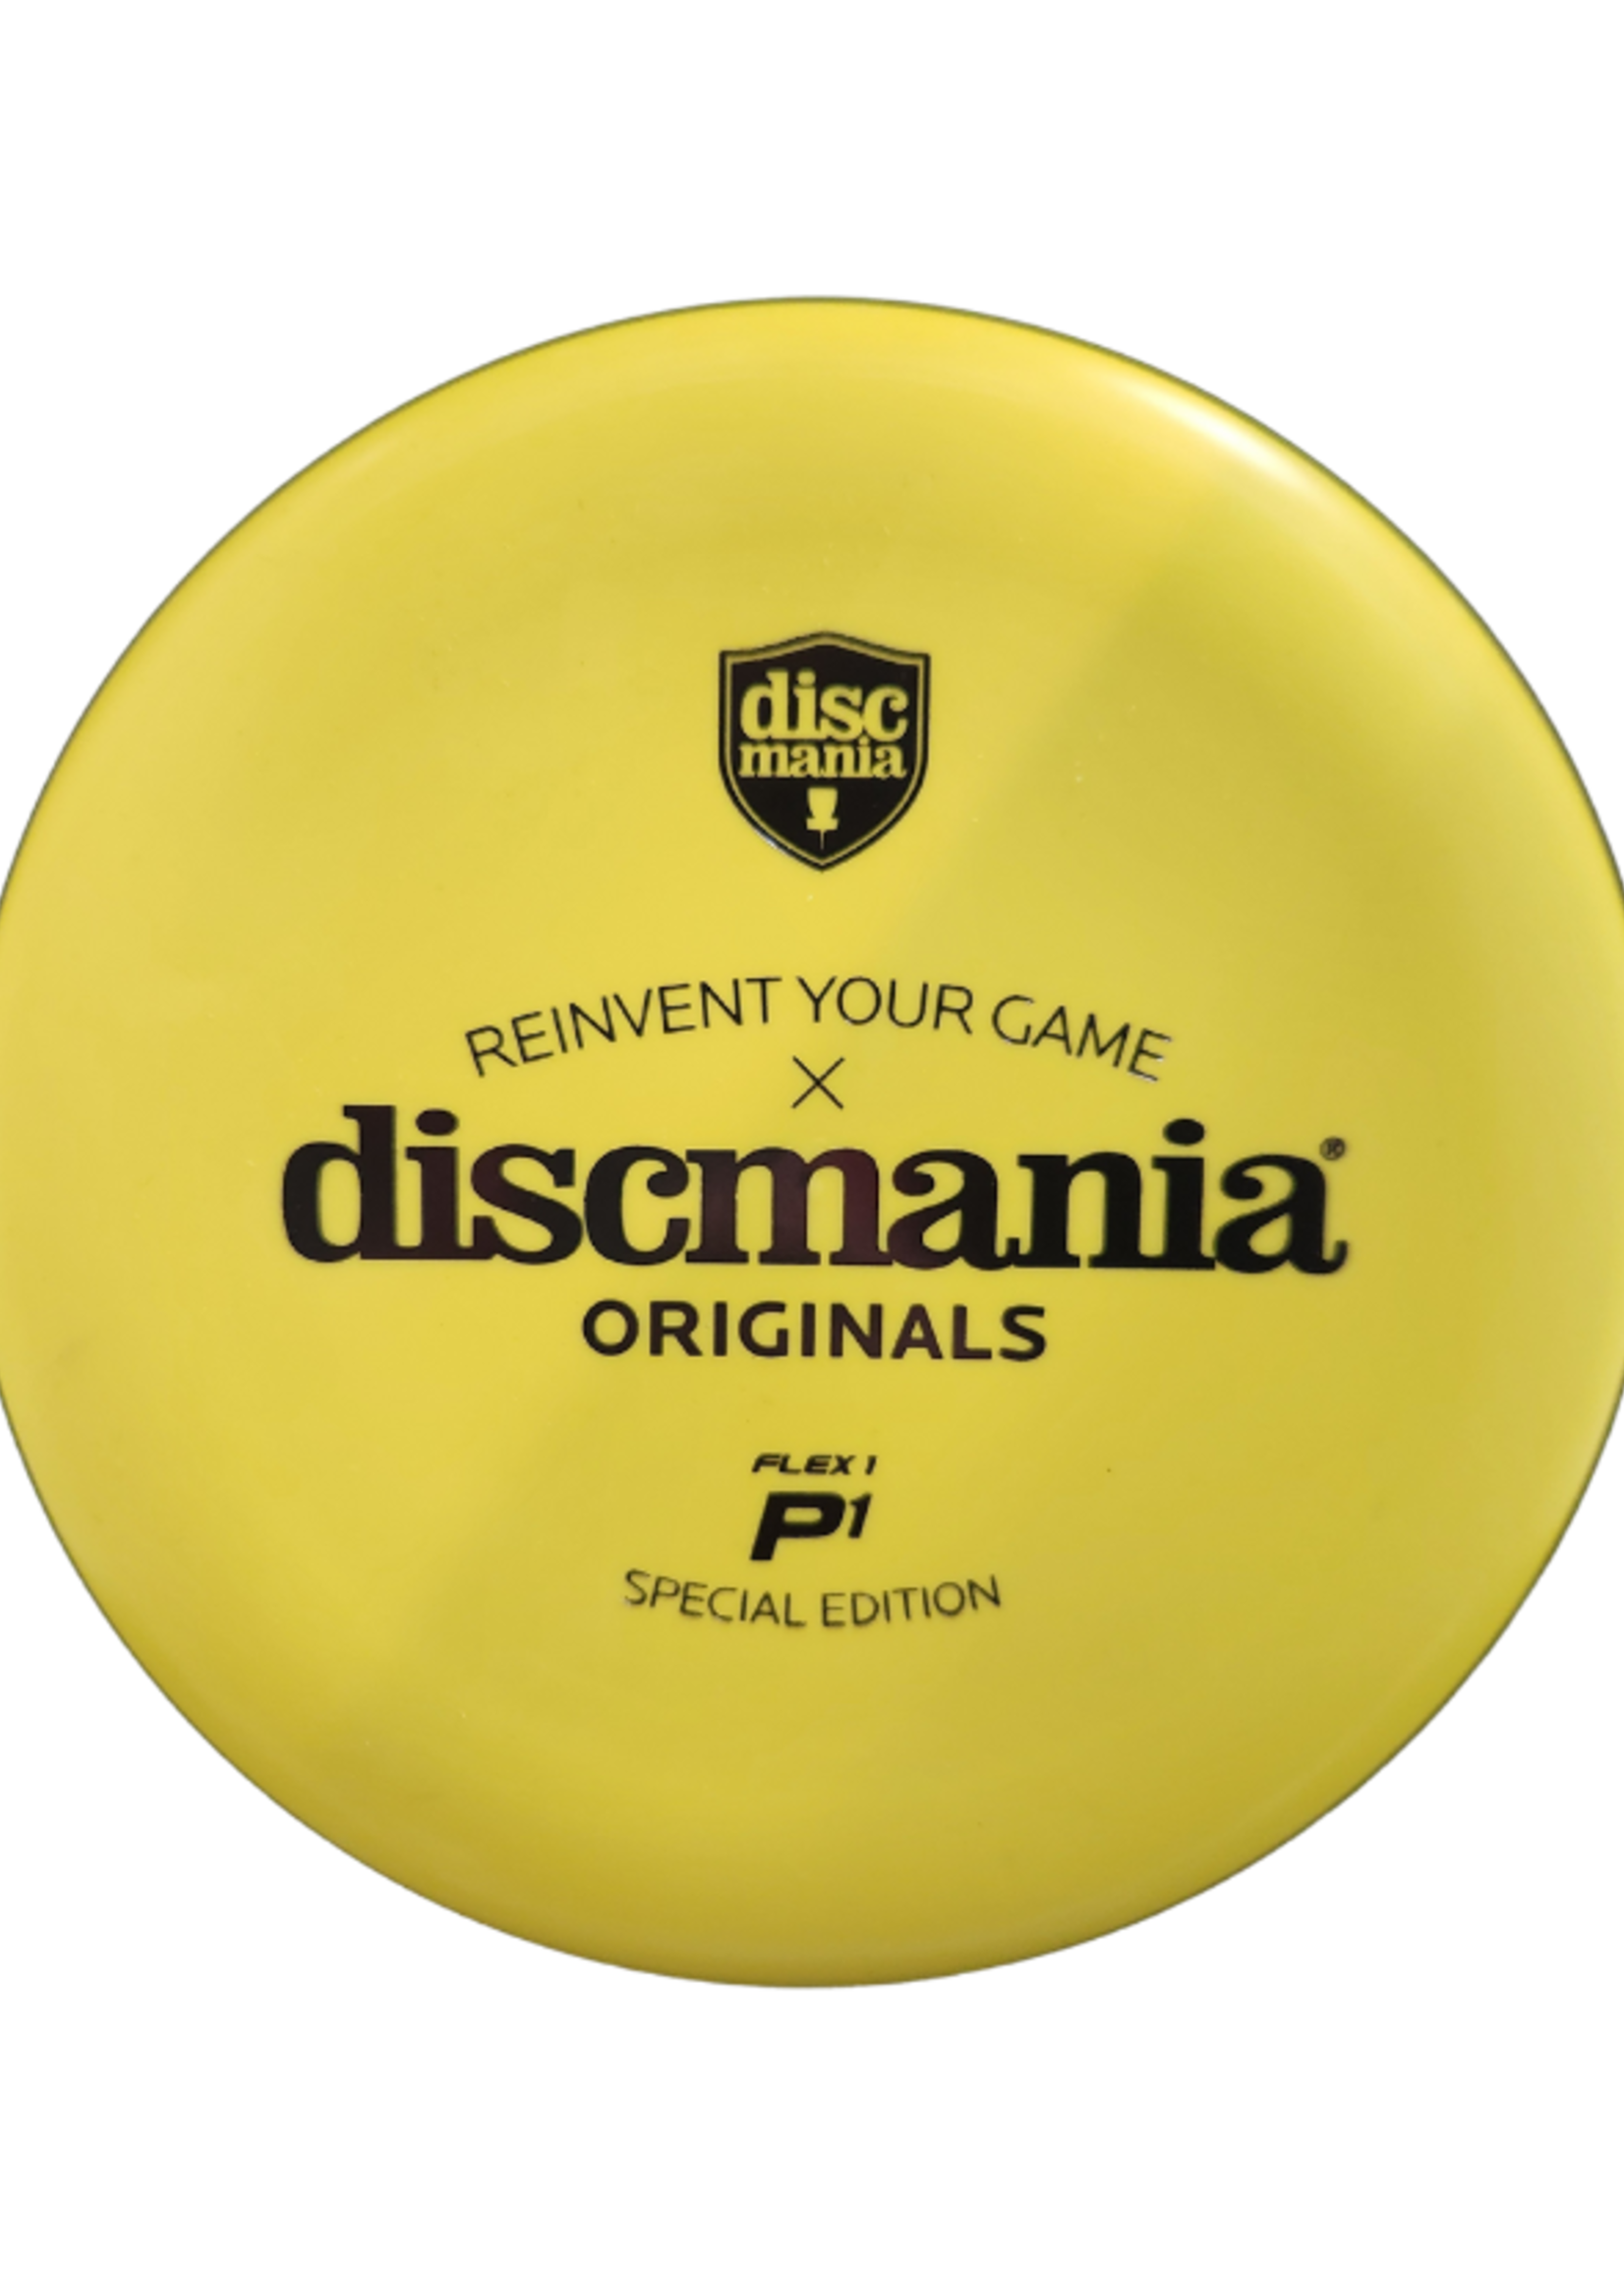 Discmania Discmania D-LINE P1 Flex 1 Special Edition